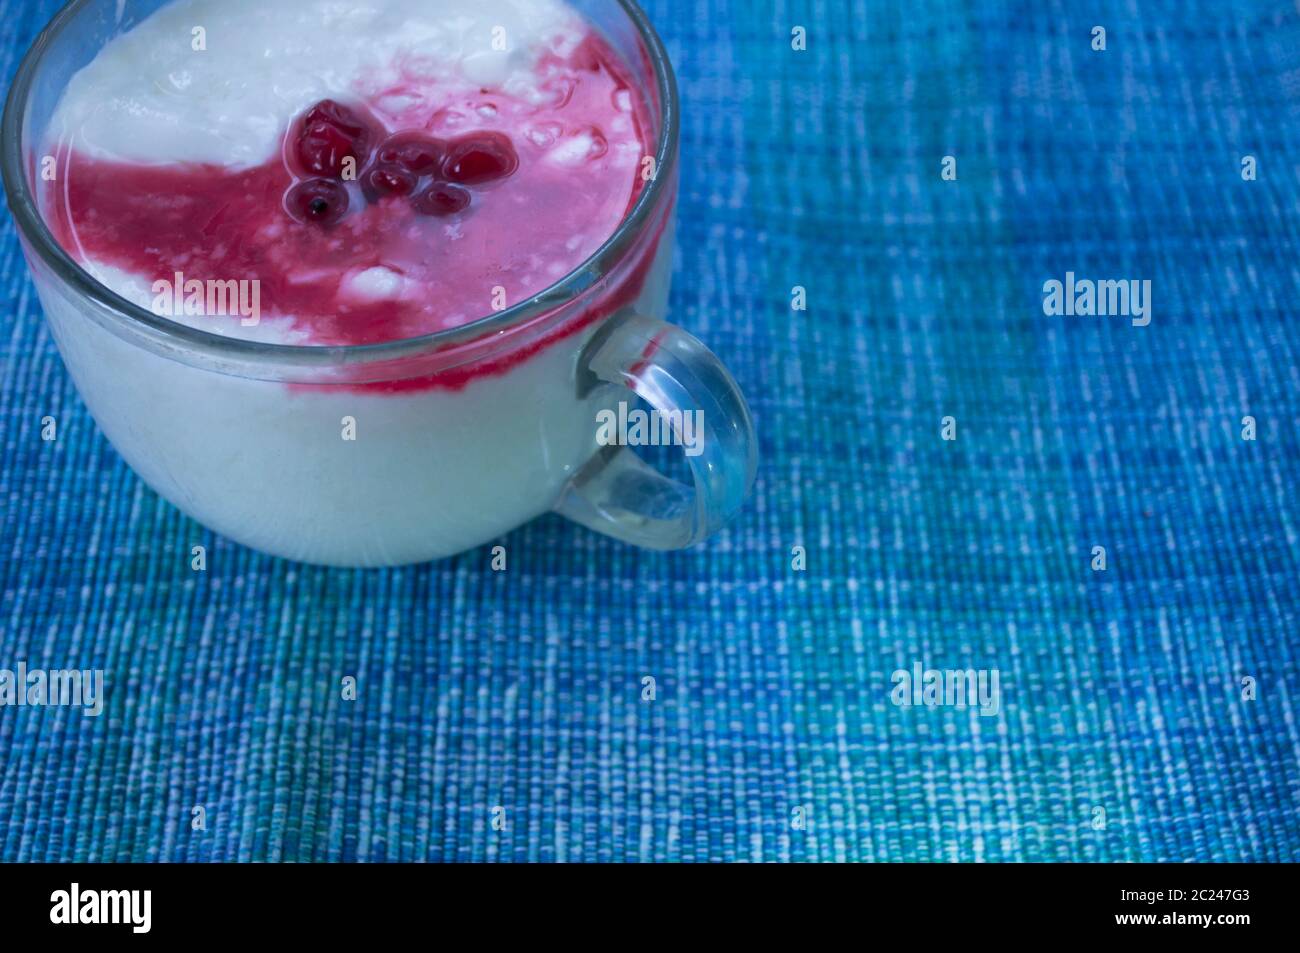 Yaourt dans une tasse transparente avec des baies de cassis et du sirop de sucre. Photo avec place pour le texte. Produits diététiques, produits laitiers Banque D'Images